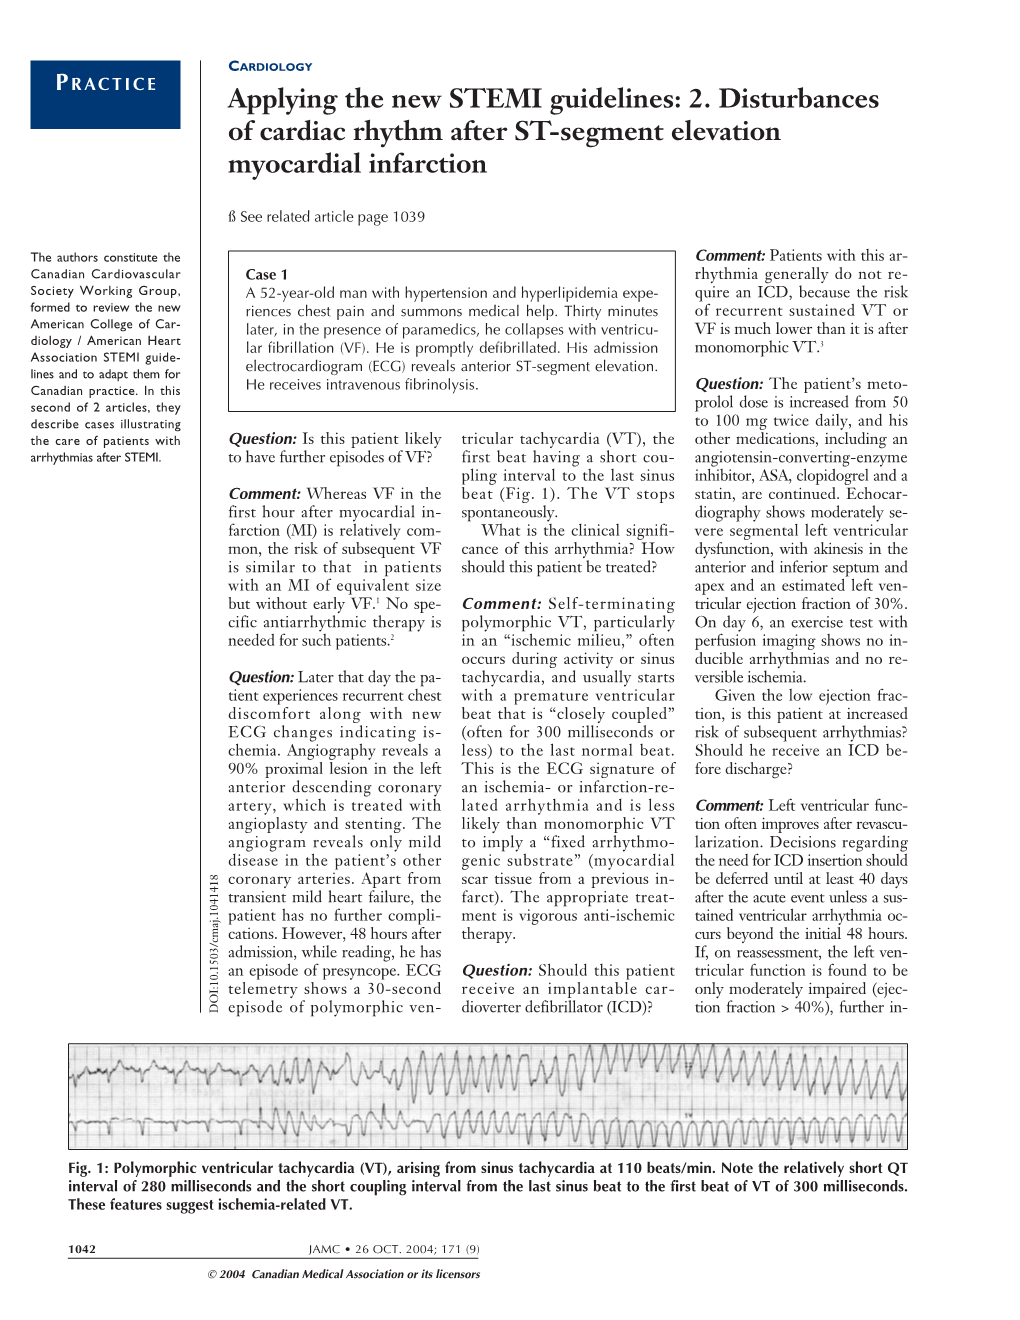 2. Disturbances of Cardiac Rhythm After ST-Segment Elevation Myocardial Infarction